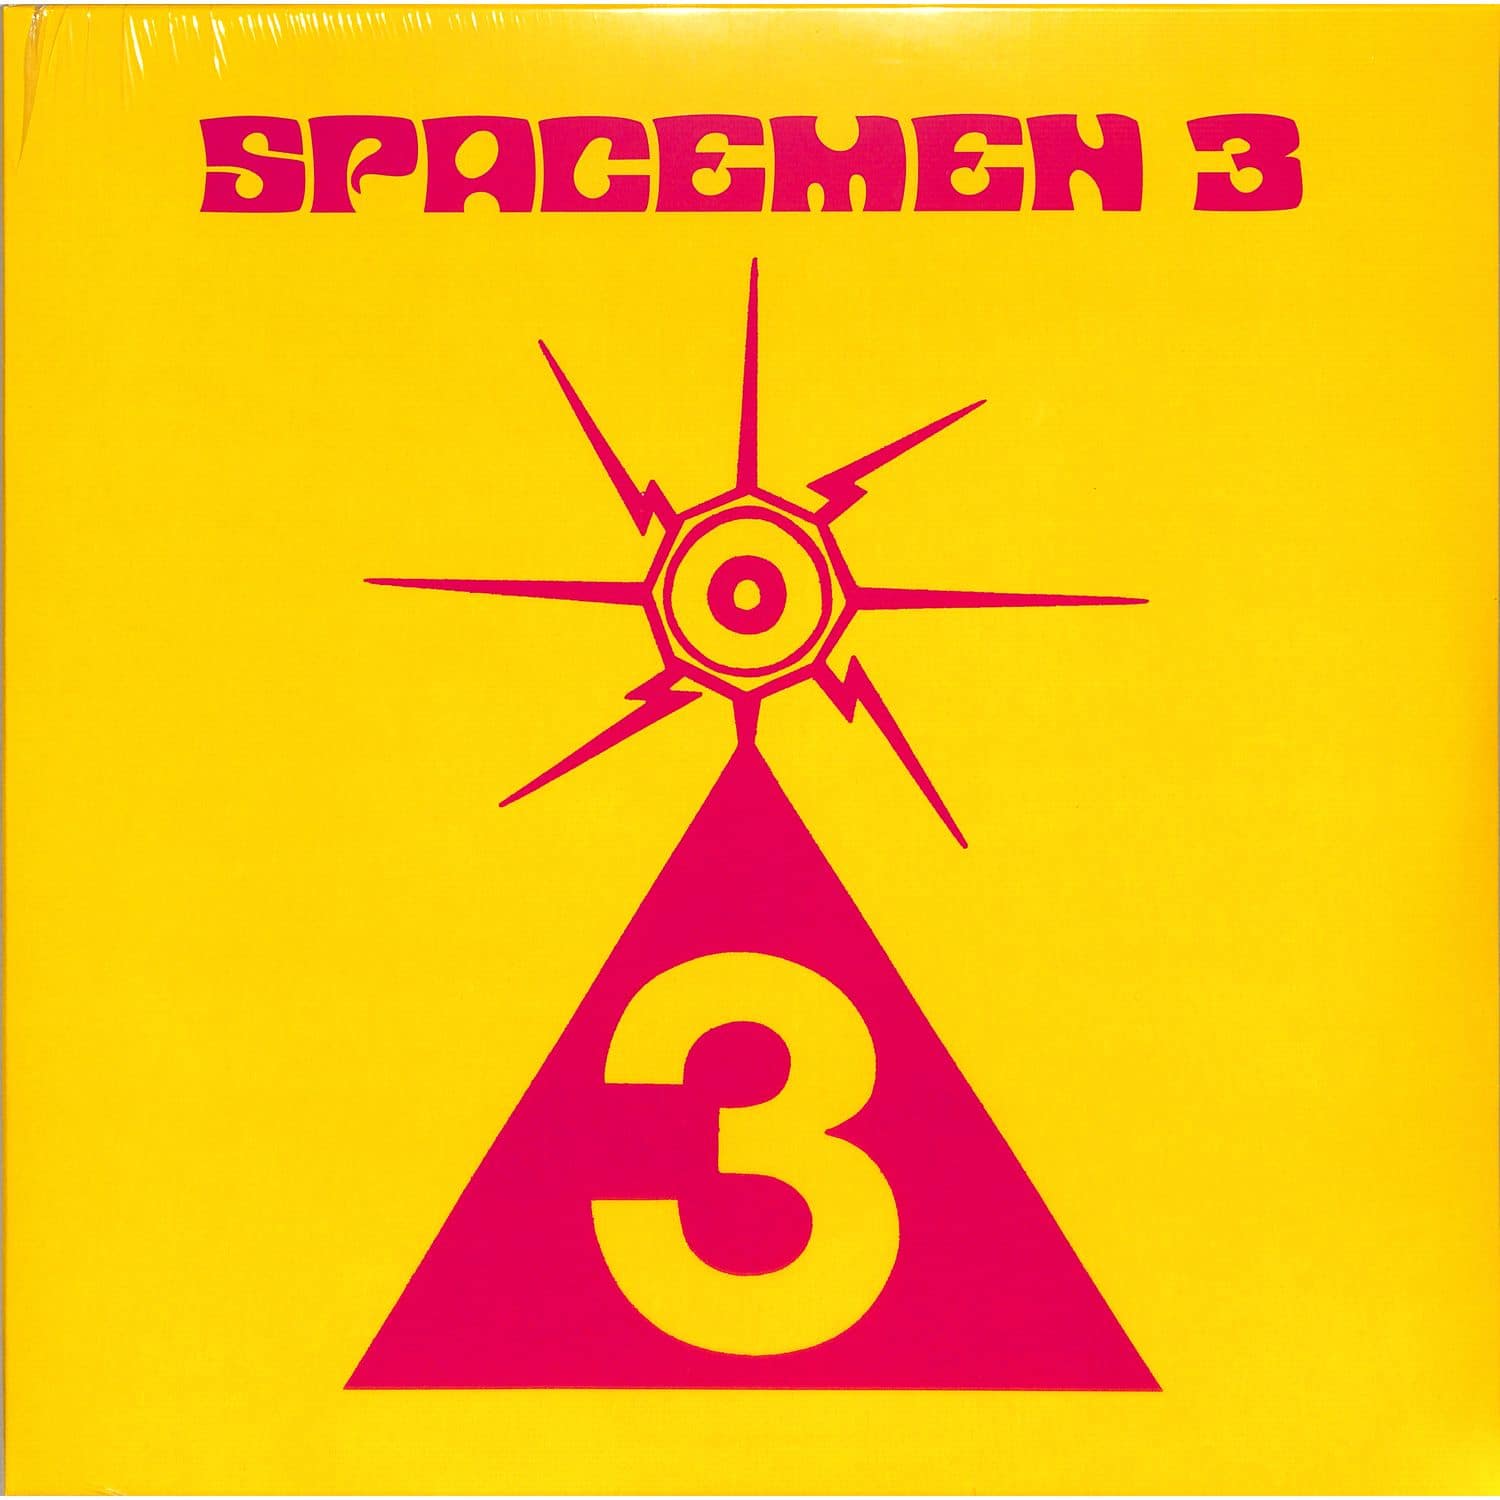 Spacemen - THREEBIE 3 